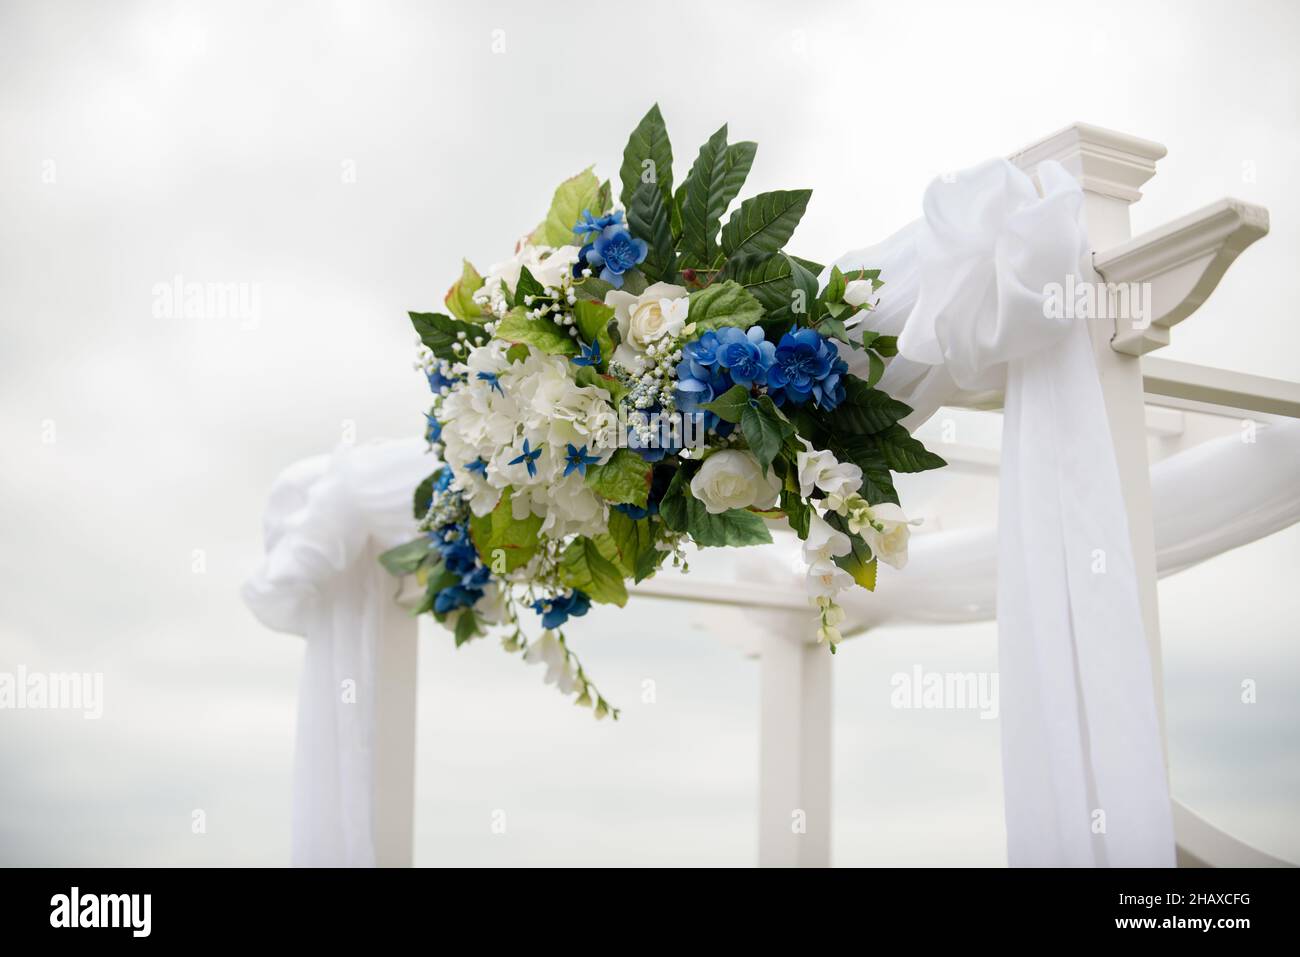 cerimonia di nozze bianco arco drappeggiato in tessuto bianco e decorato con fiori bianchi e blu Foto Stock